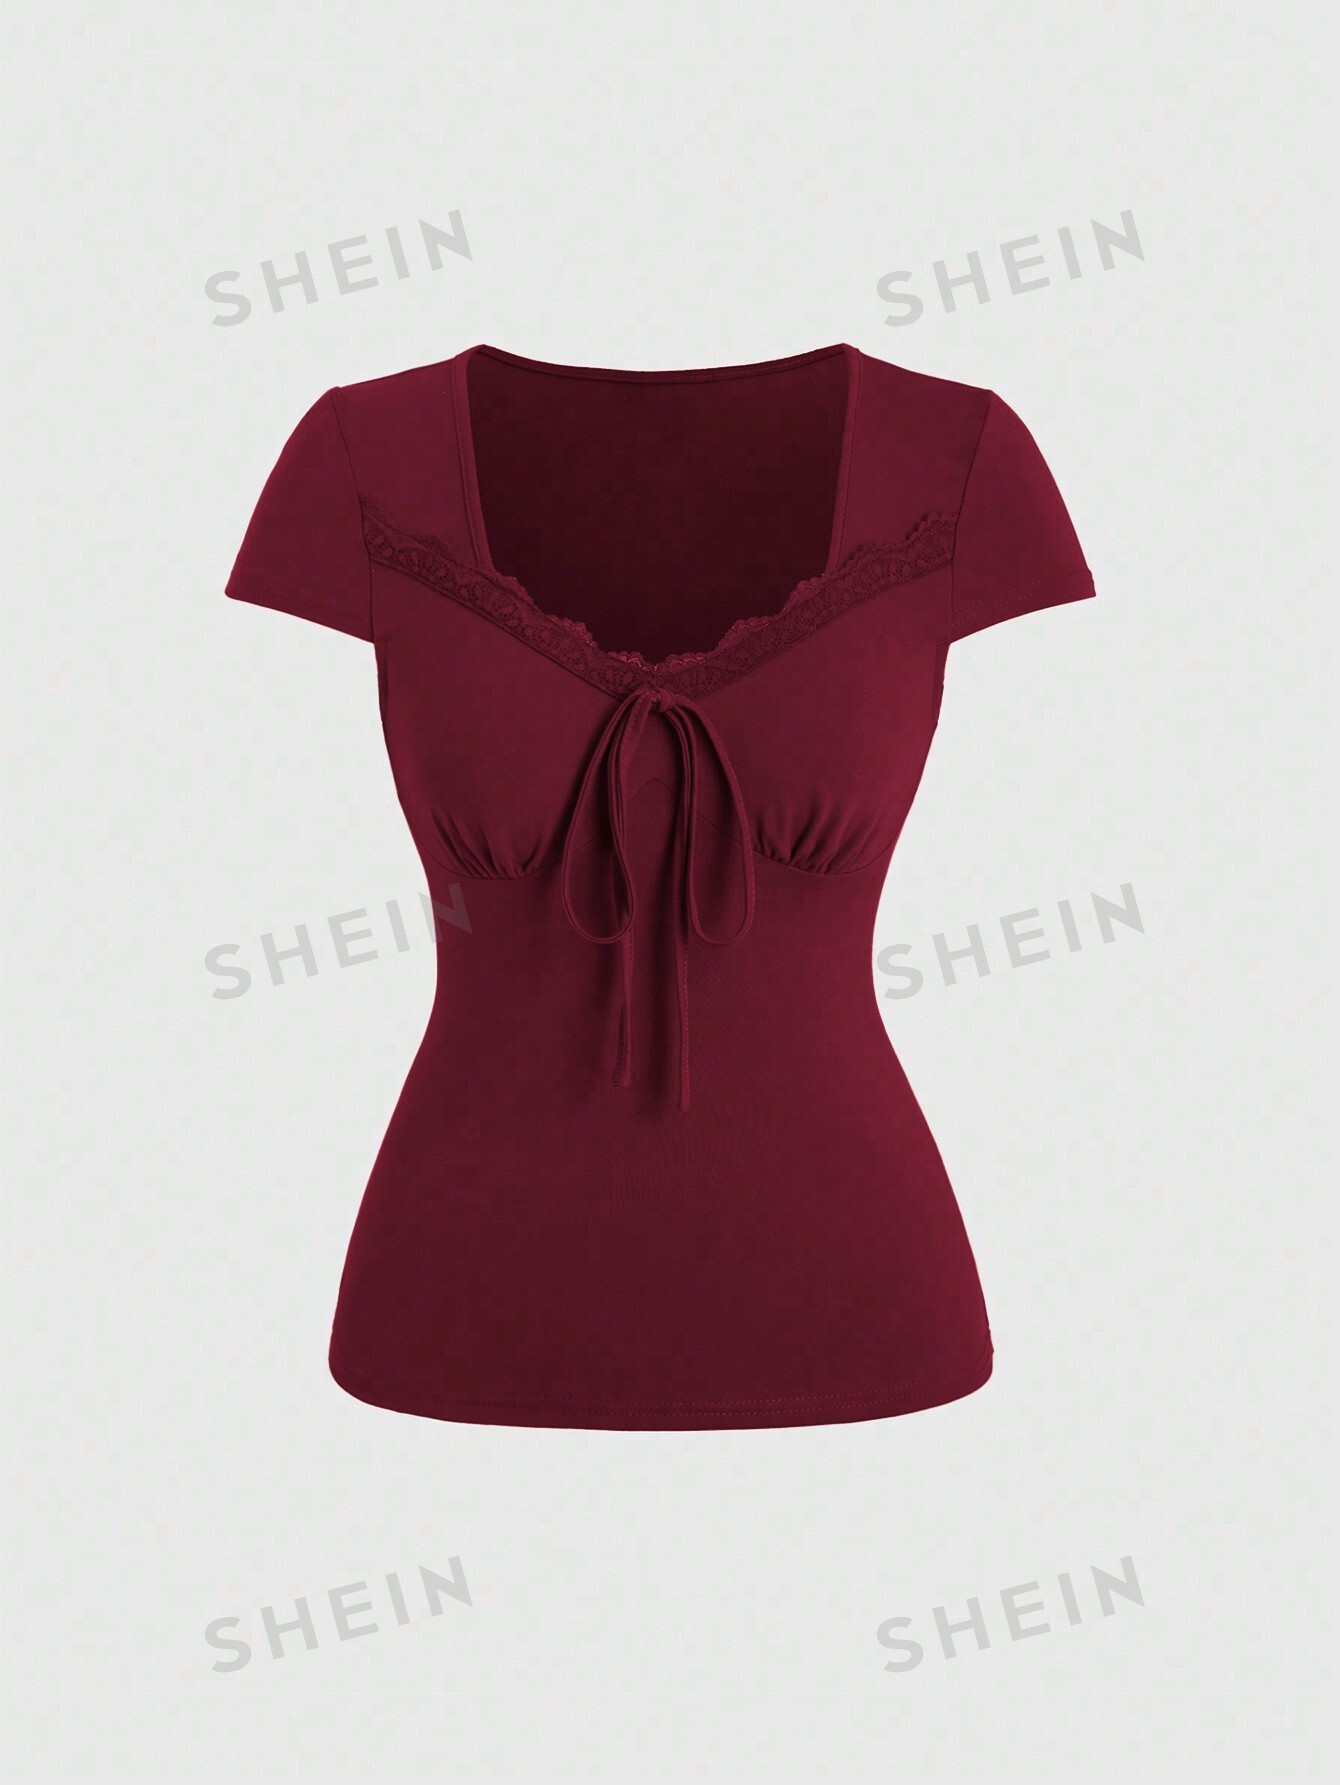 SHEIN Qutie Женская кружевная футболка в стиле пэчворк с цветочным принтом и вырезом в форме сердца, бургундия фото